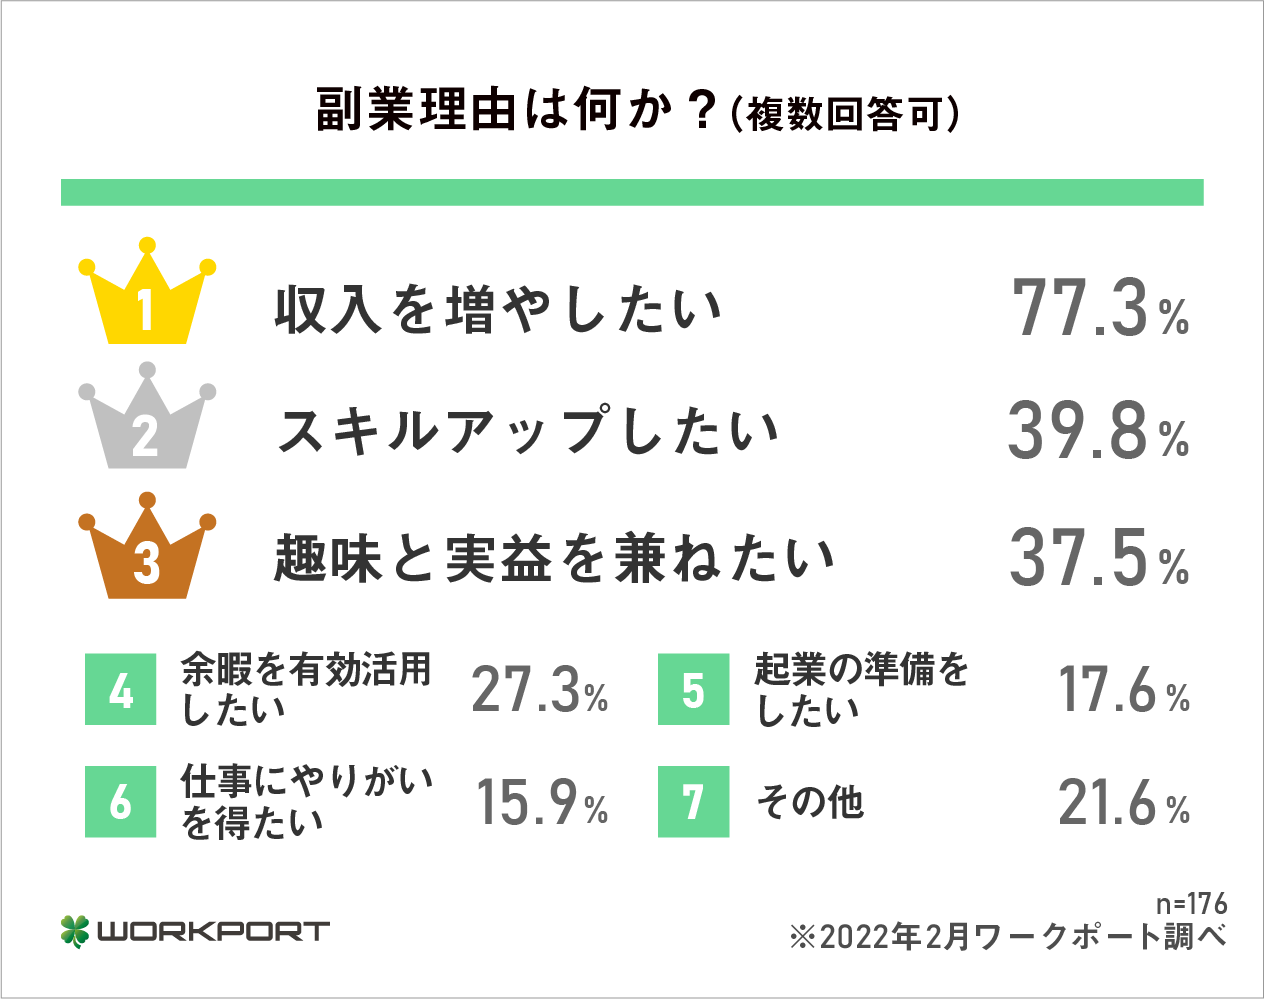 「収入を増やしたい」（77.3％）がダントツの1位
日本人の給与が上がっていないことが大きな要因か